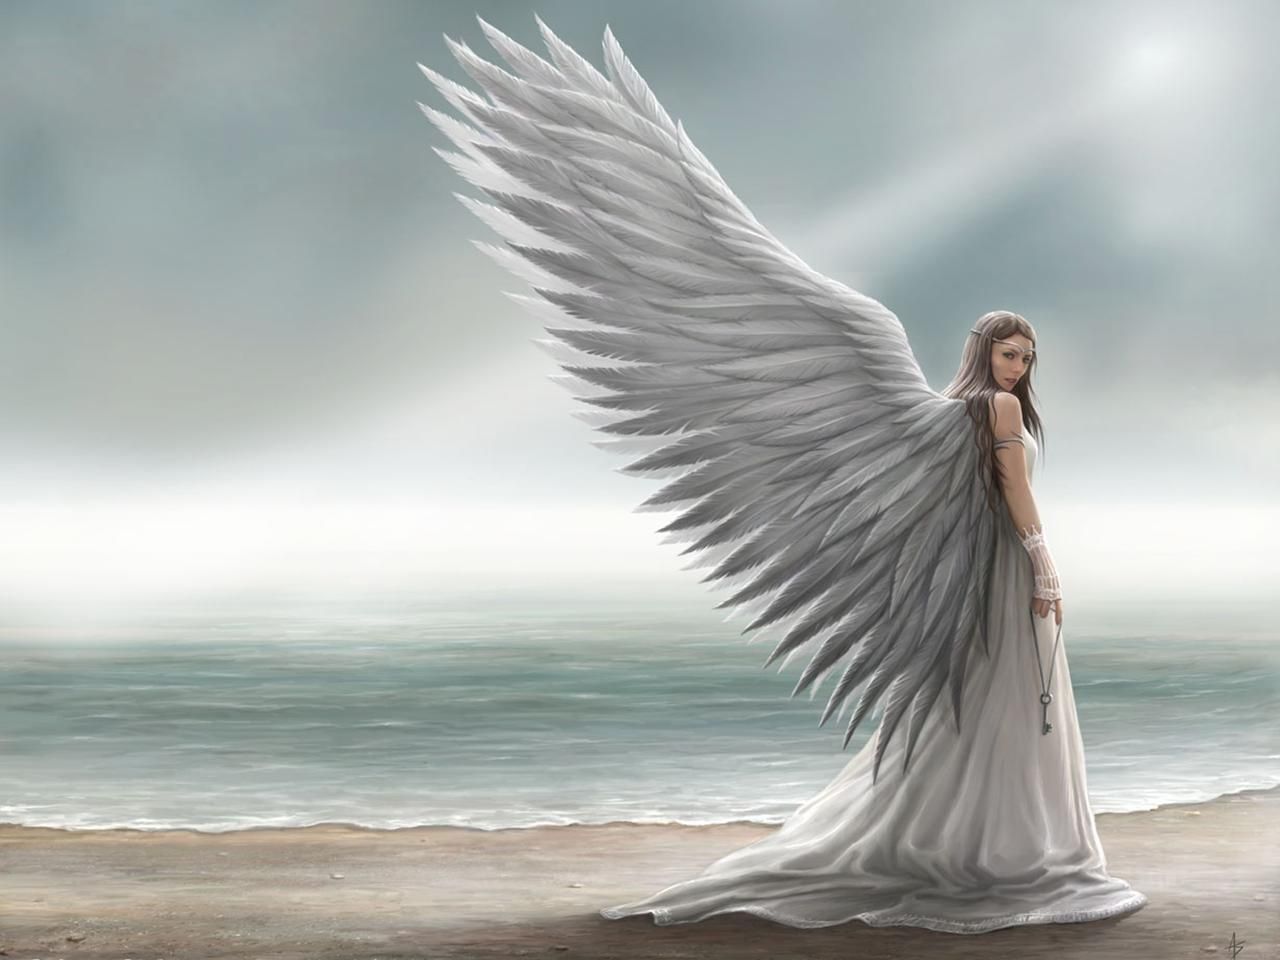  Wunderschöne Engel Hintergrundbild 1280x960. Laden Sie Das Engel Hintergrundbild Für Ihr Handy In Hochwertigen, Hintergrundbildern Engel Kostenlos Herunter